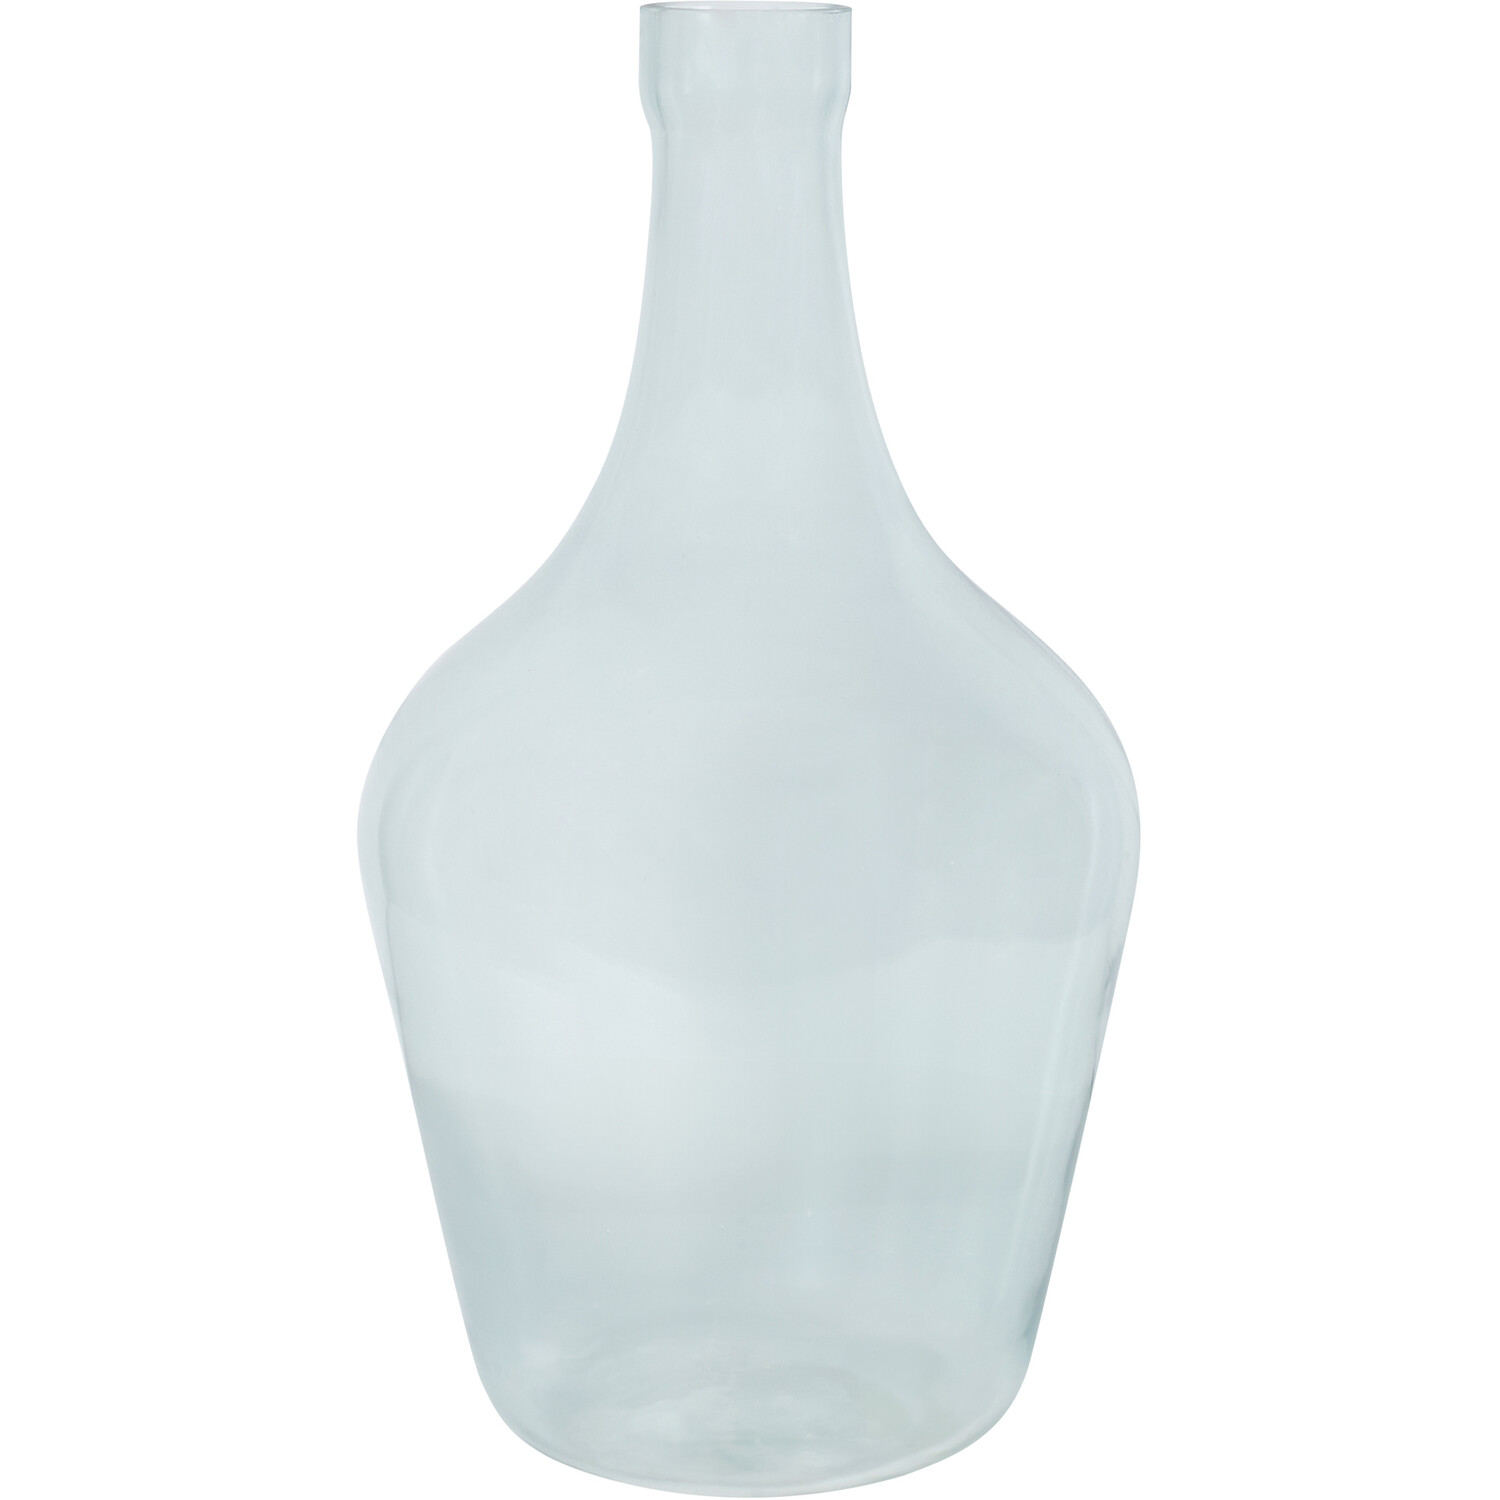 Bottle Neck Vase - Blue Image 1